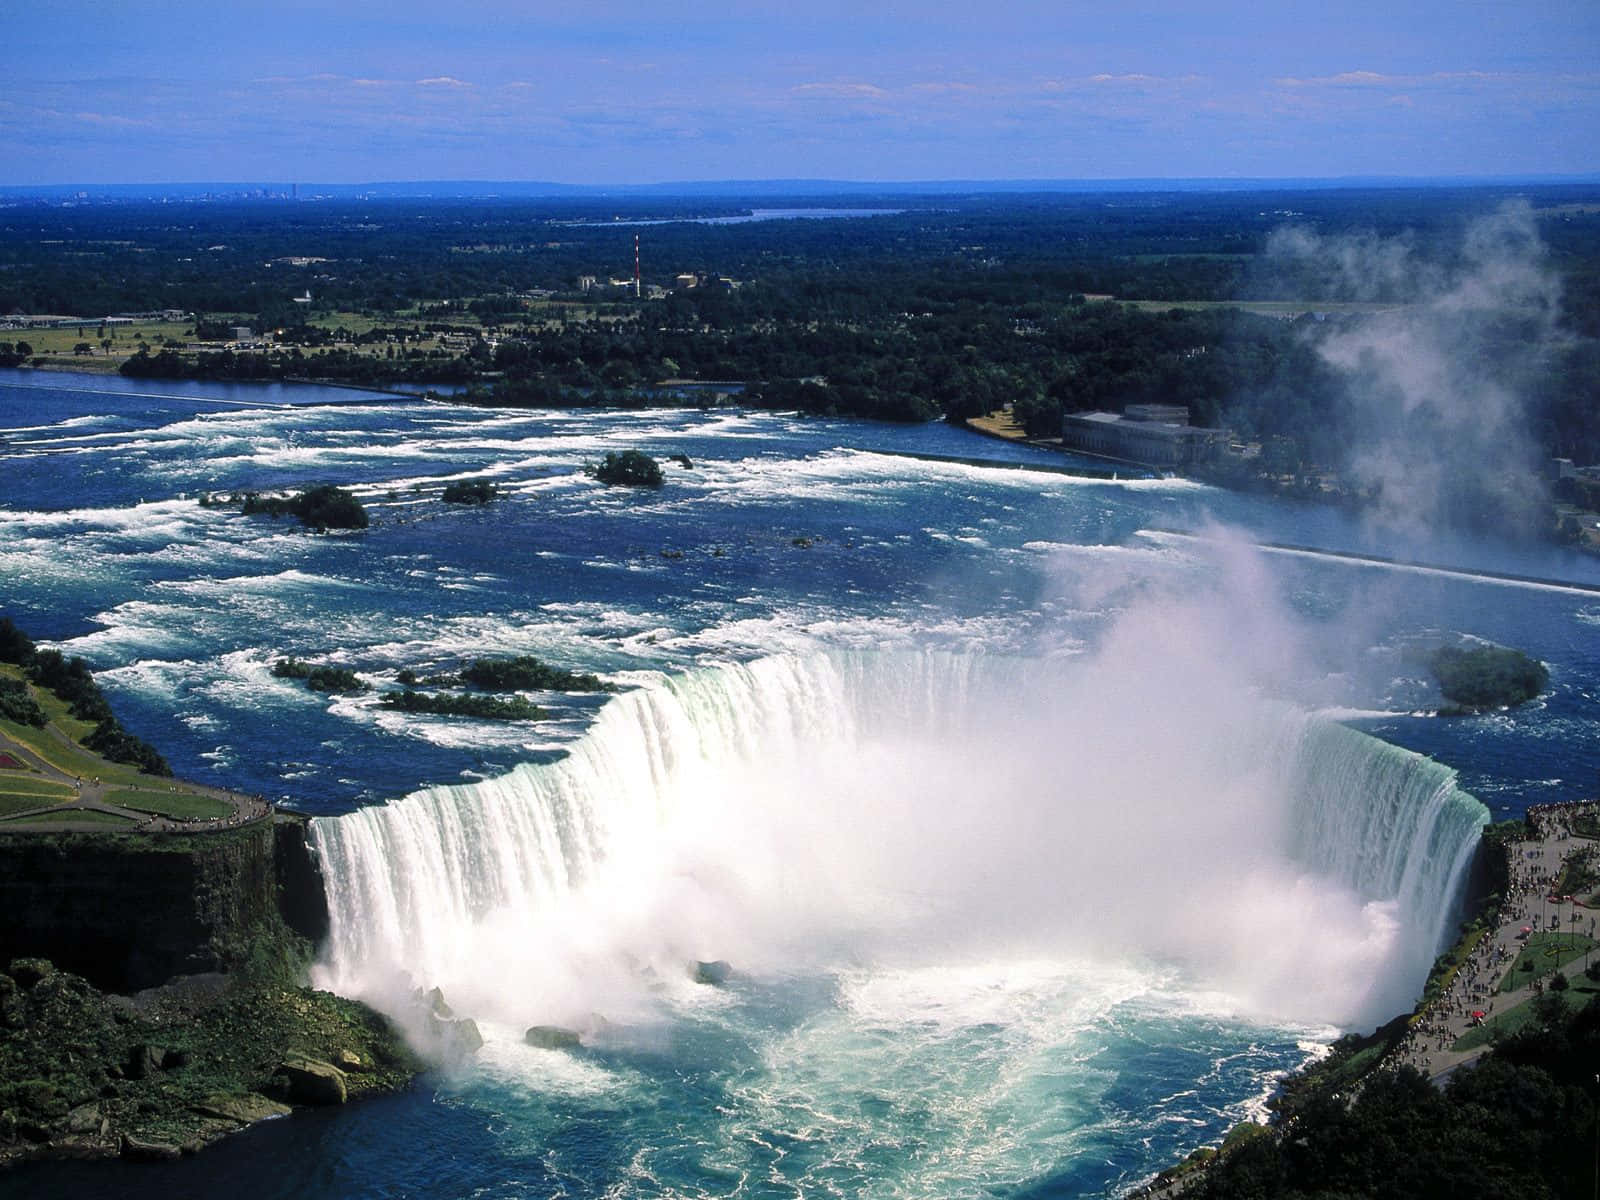 The majestic Niagara Falls